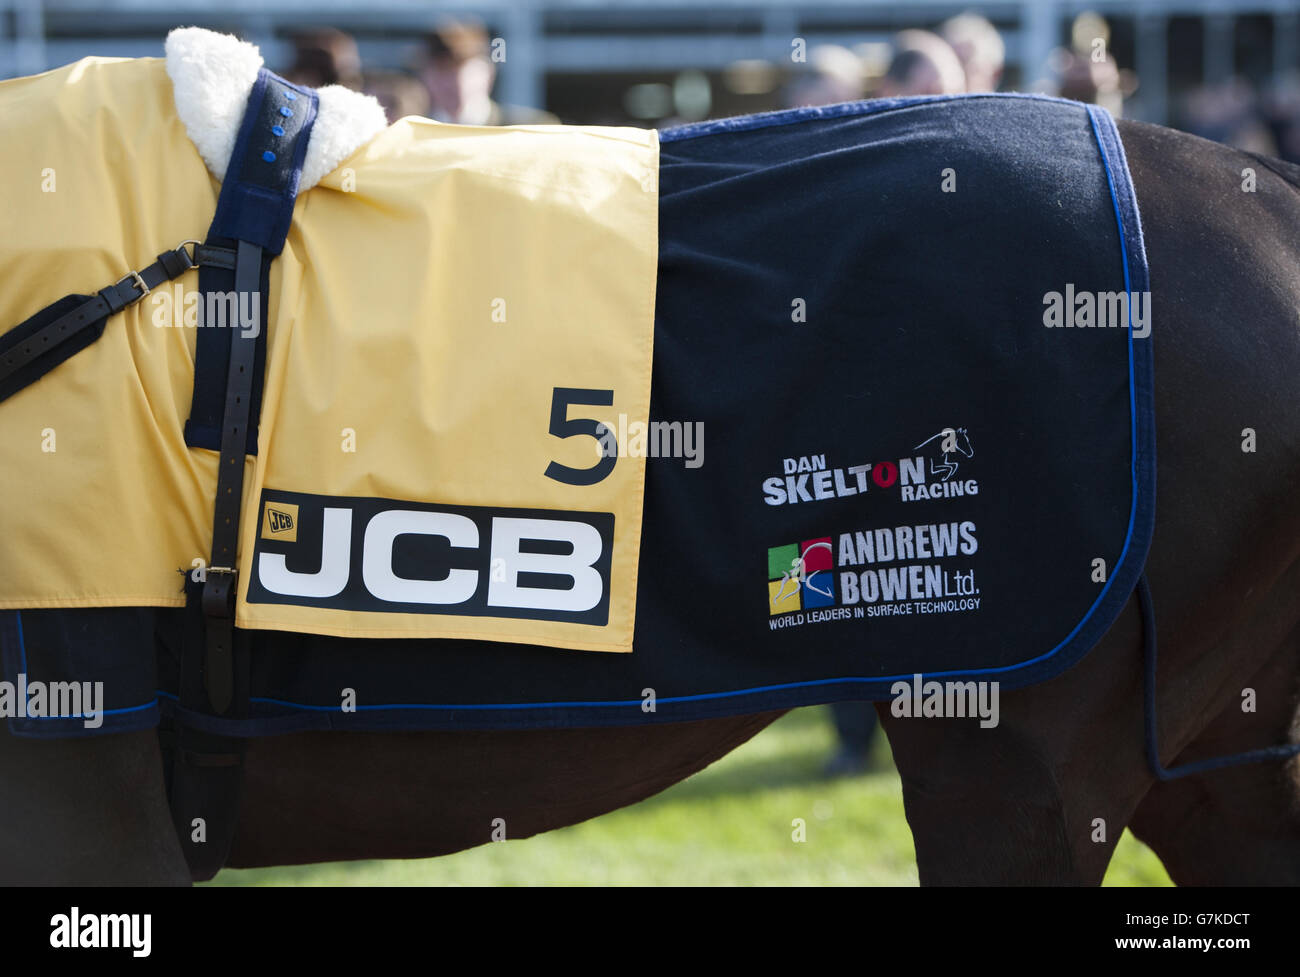 Pferderennen - Festival Trials Day - Cheltenham Racecourse. JCB-Branding auf einem Pferd auf der Pferderennbahn Cheltenham Stockfoto